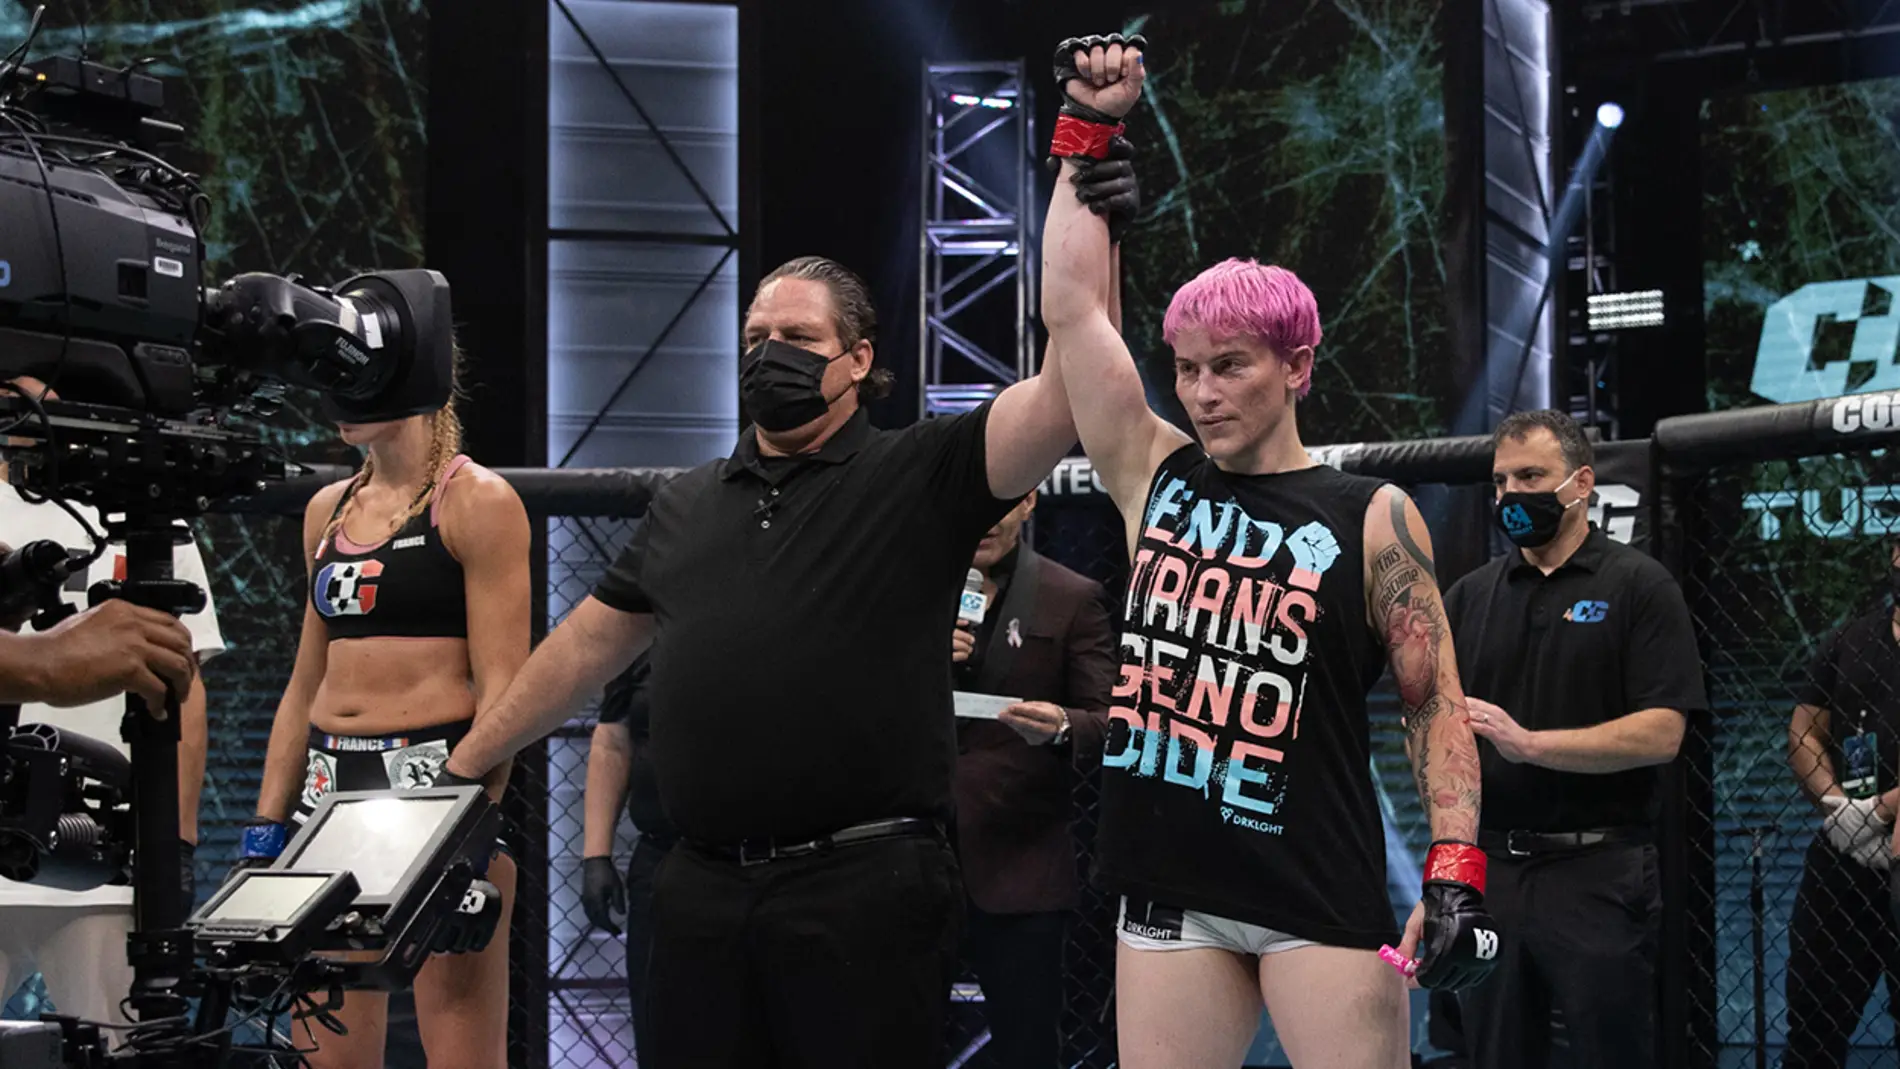 La luchadora trans Alana McLaughlin recibe multitud de críticas tras su victoria en su debut en MMA